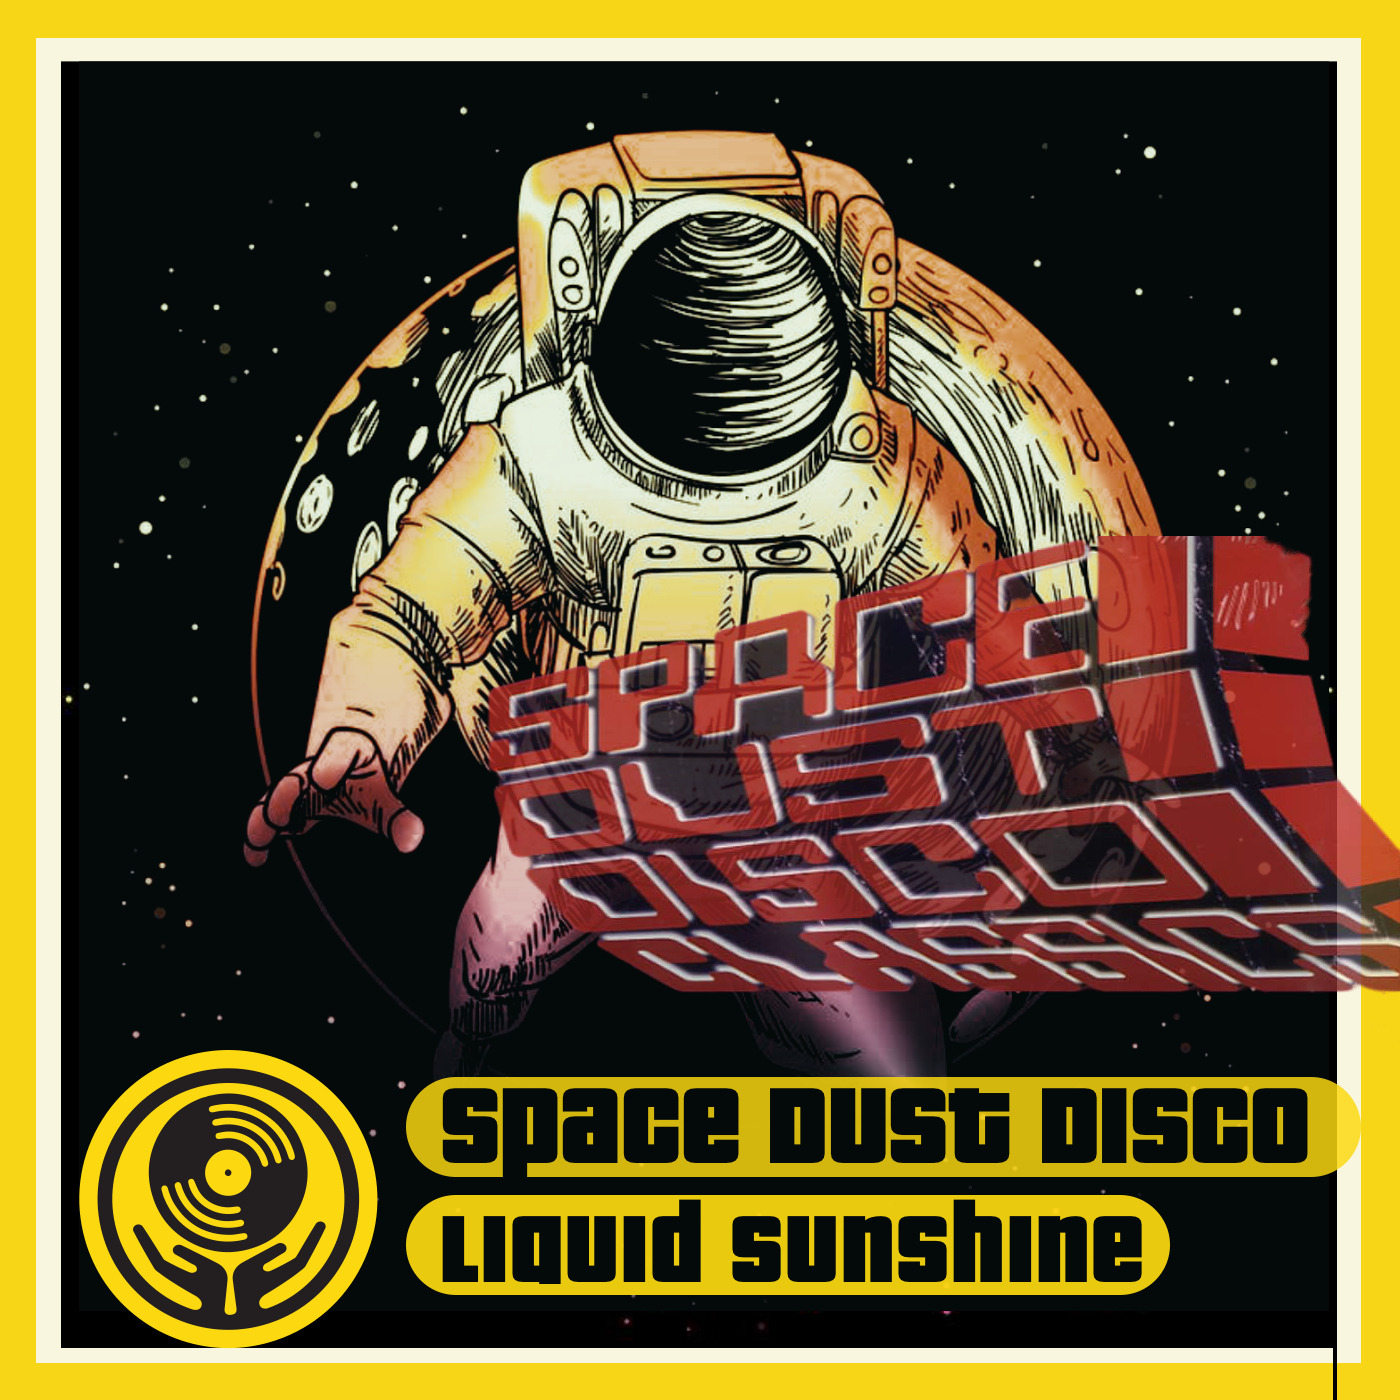 Disco Deelites - Space Dust Disco Classics - Liquid Sunshine @ The Face Radio - Show #119 - 09-08-2022